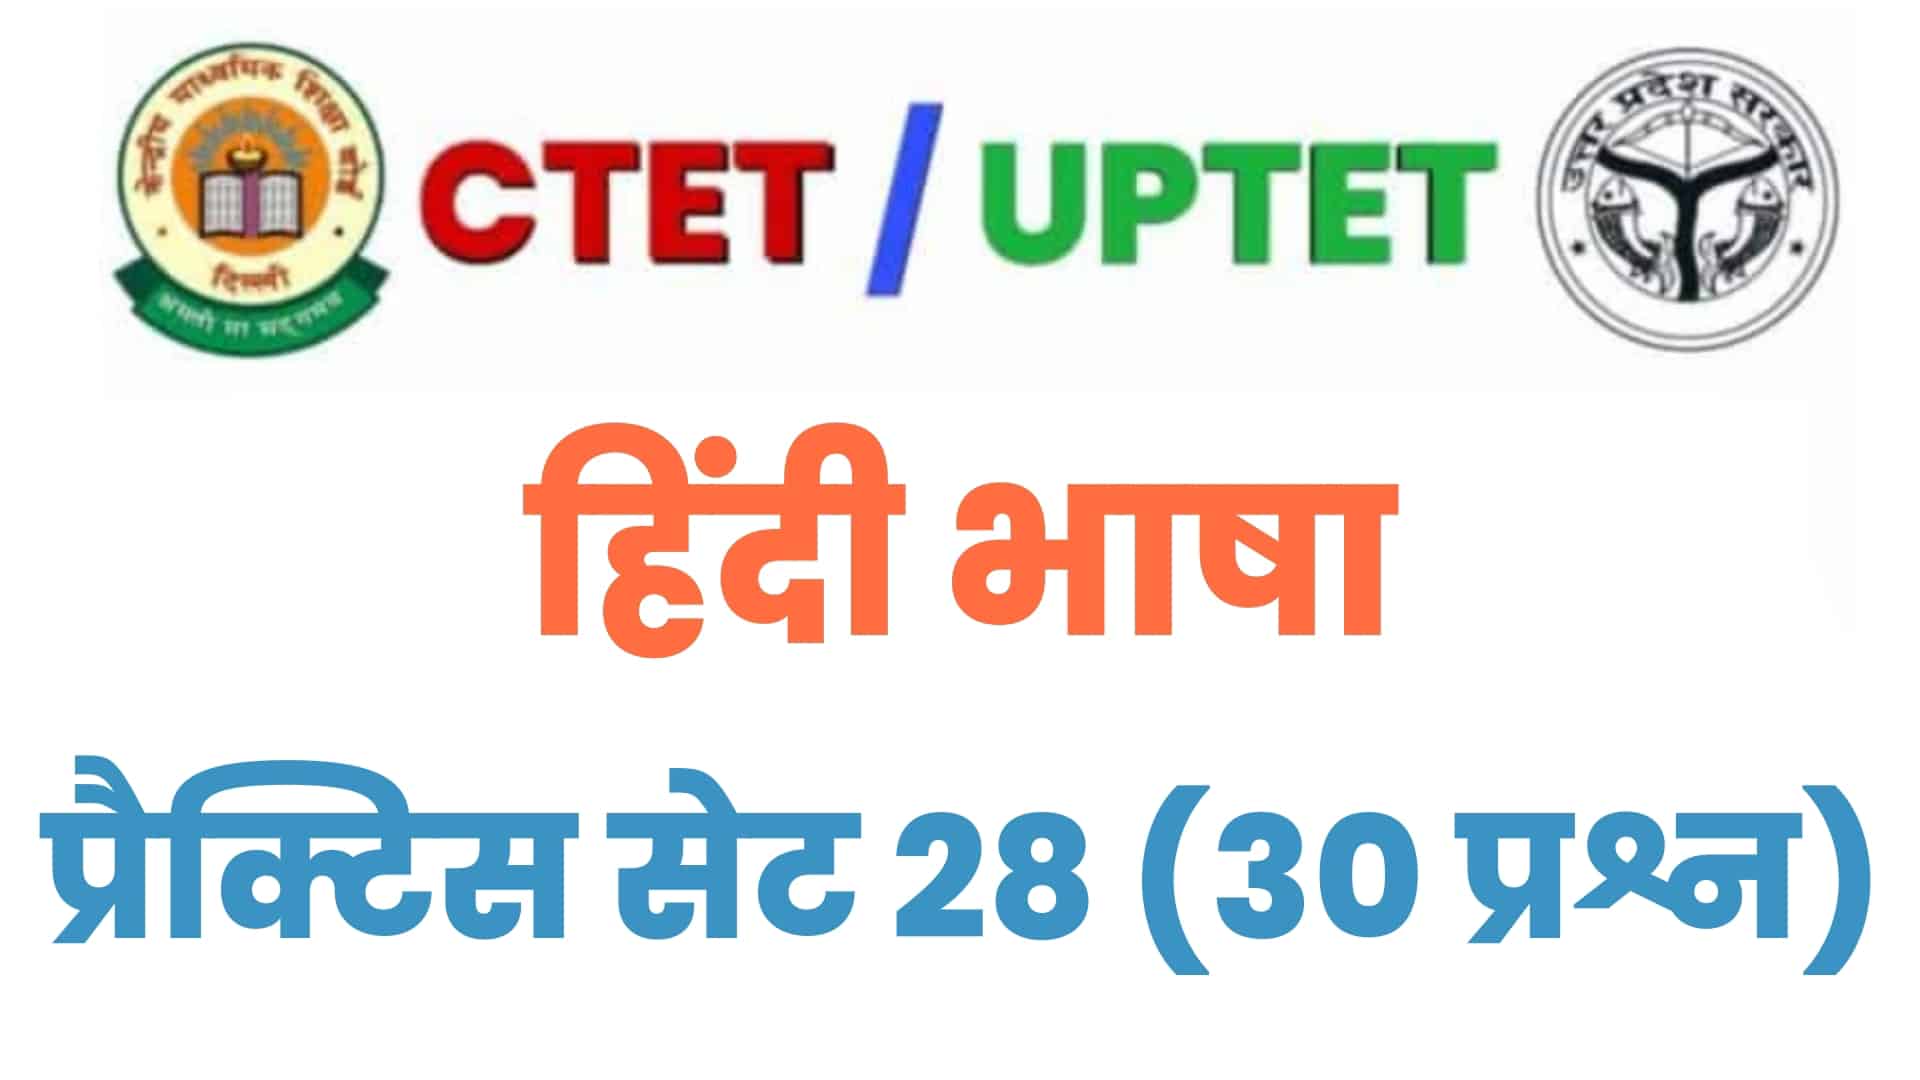 UPTET/CTET हिंदी भाषा प्रैक्टिस सेट 28 : परीक्षा में बैठने से पहले इन 30 महत्वपूर्ण प्रश्नों का अवश्य कर लें अध्ययन